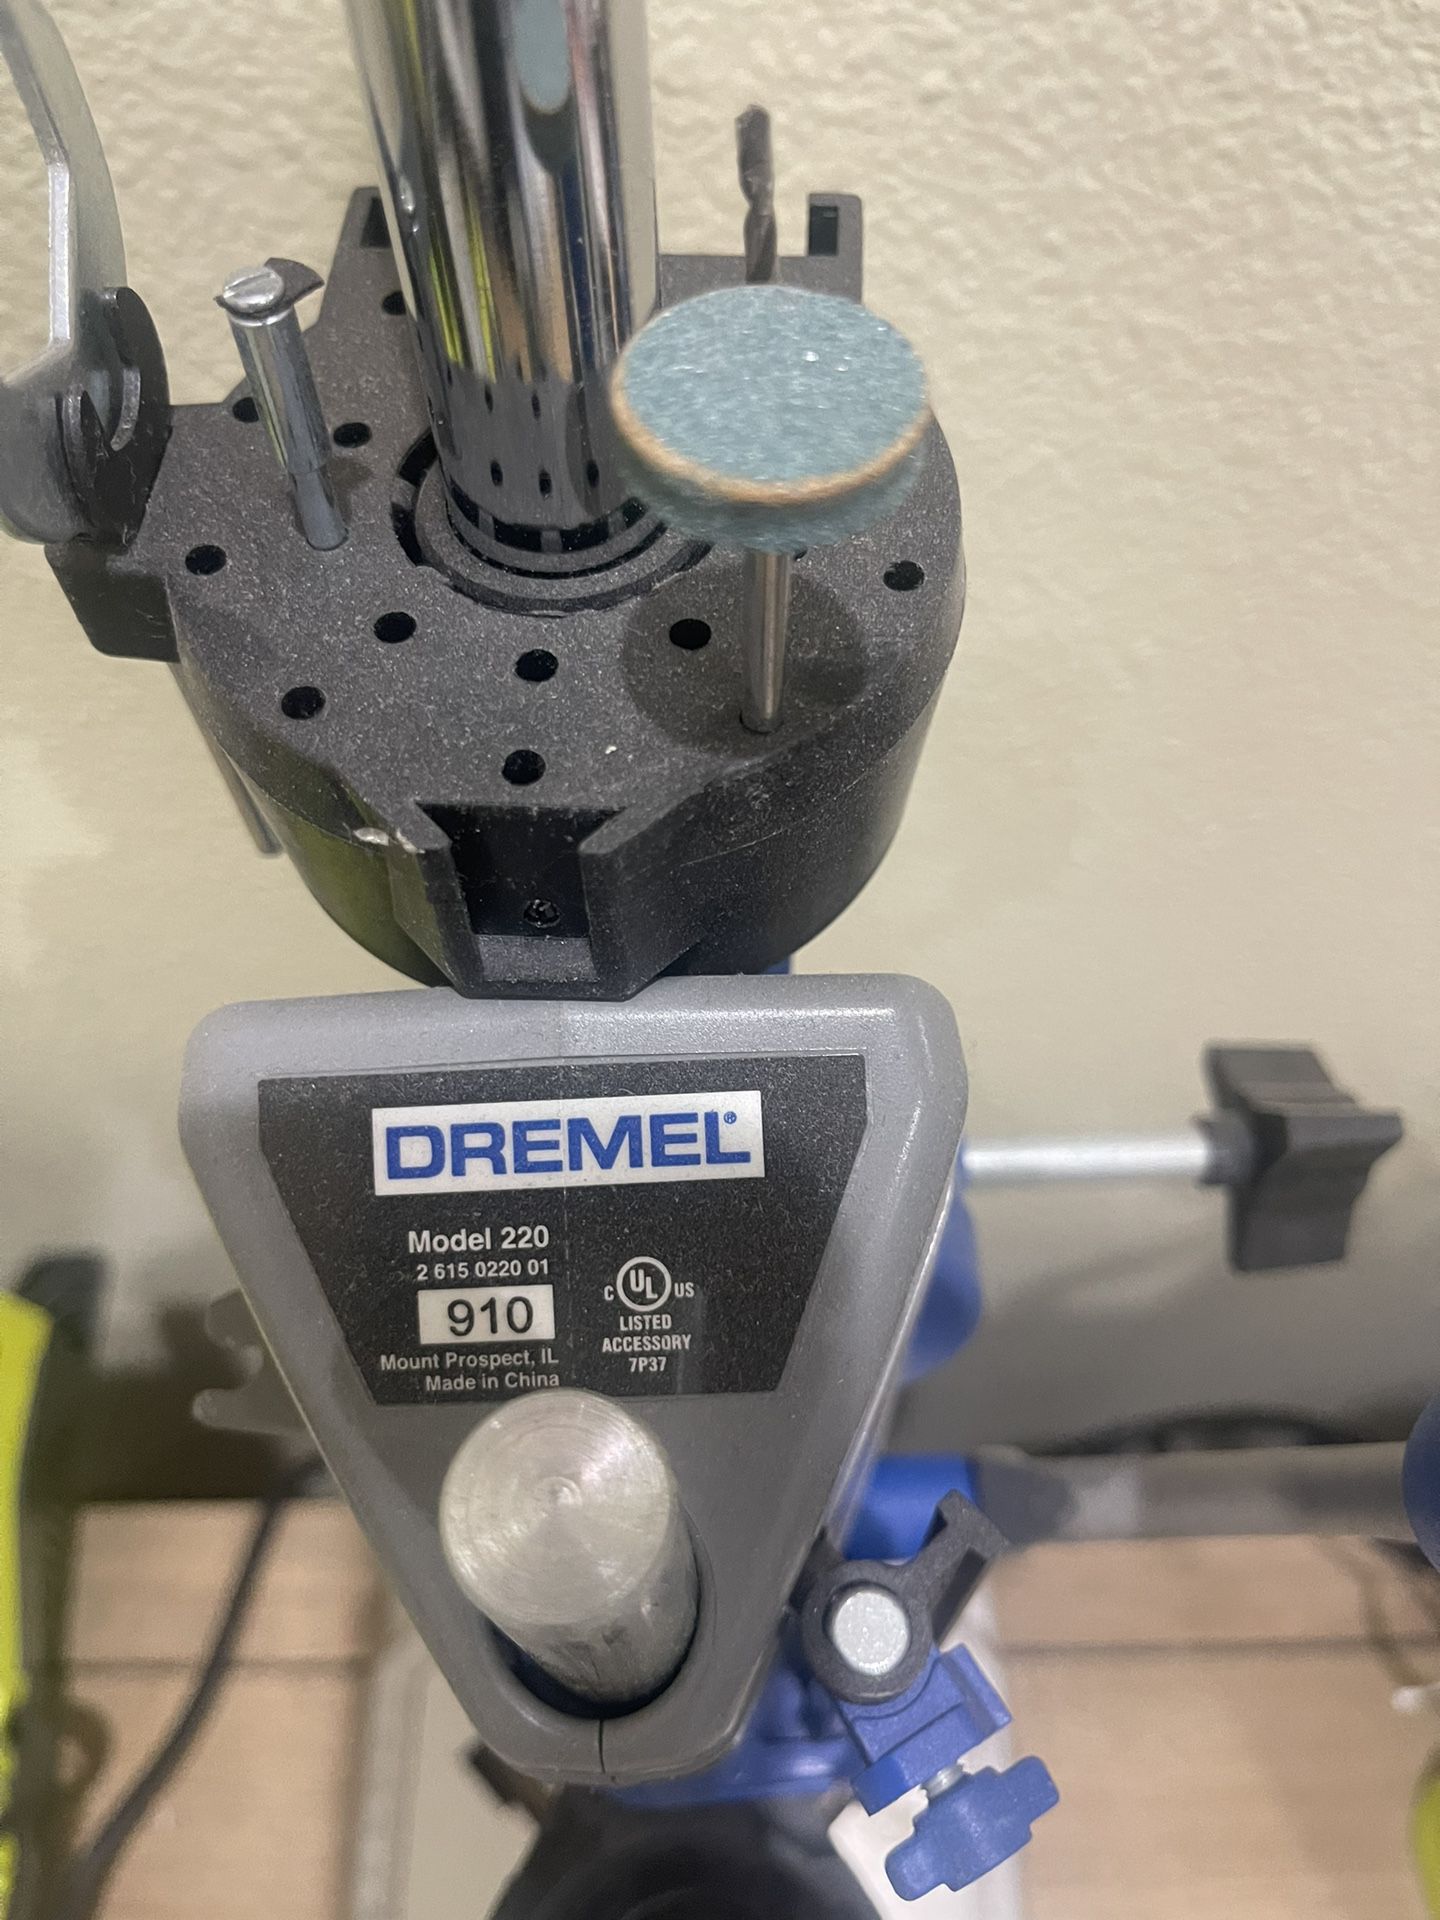 Dremel Drill Press - Used 4 Times